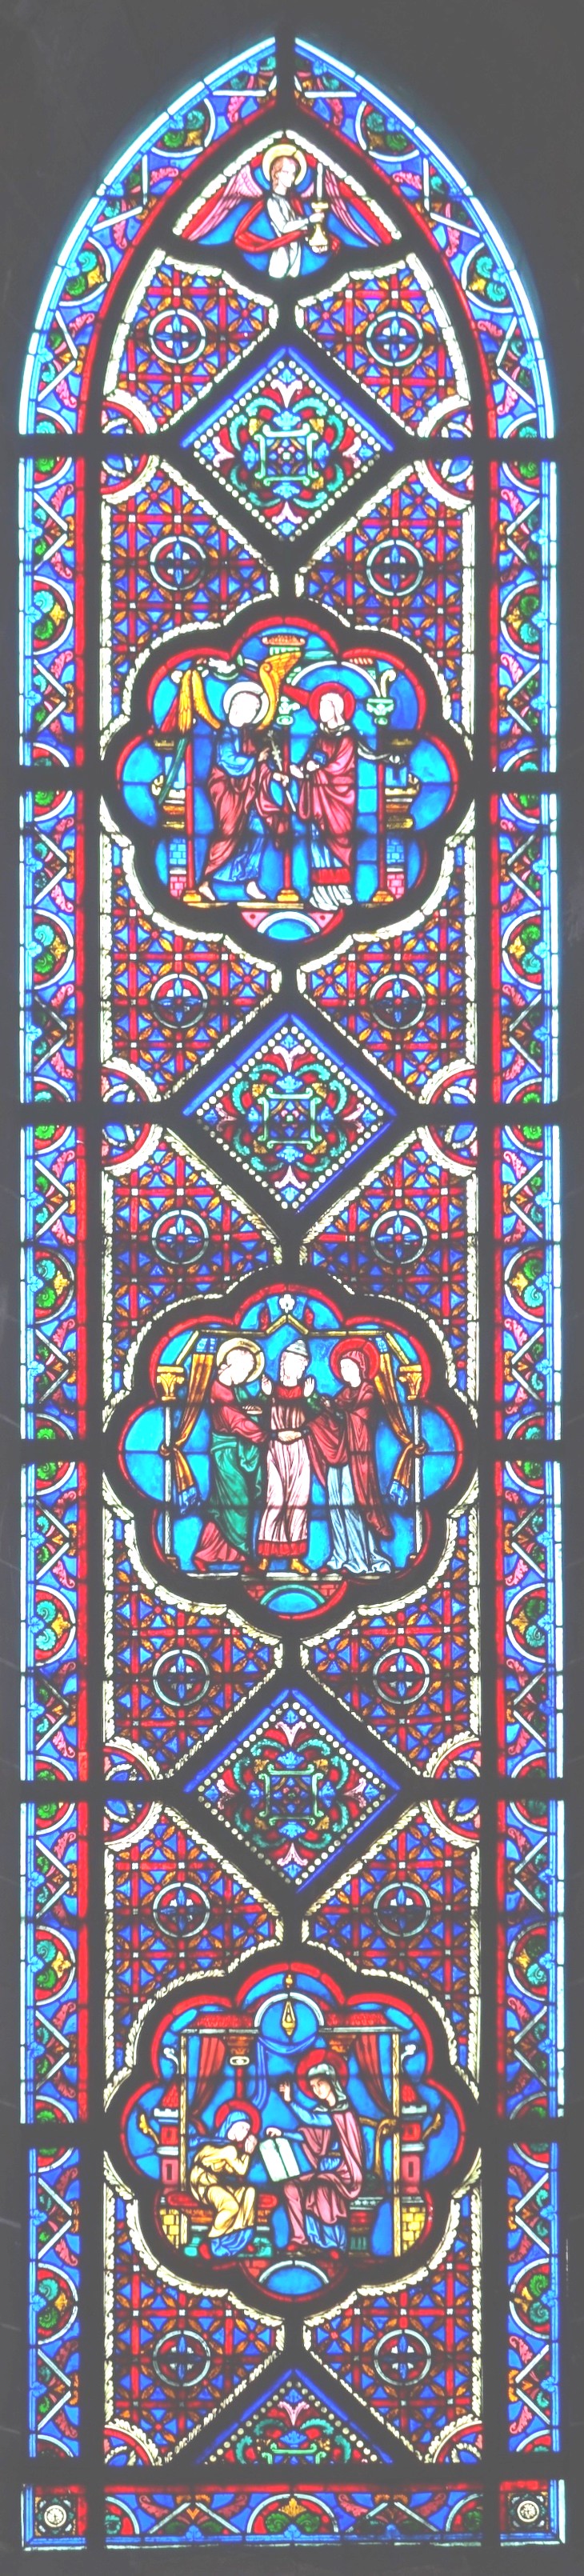 B3 - vitraux de la chapelle épiscopale saint-omer